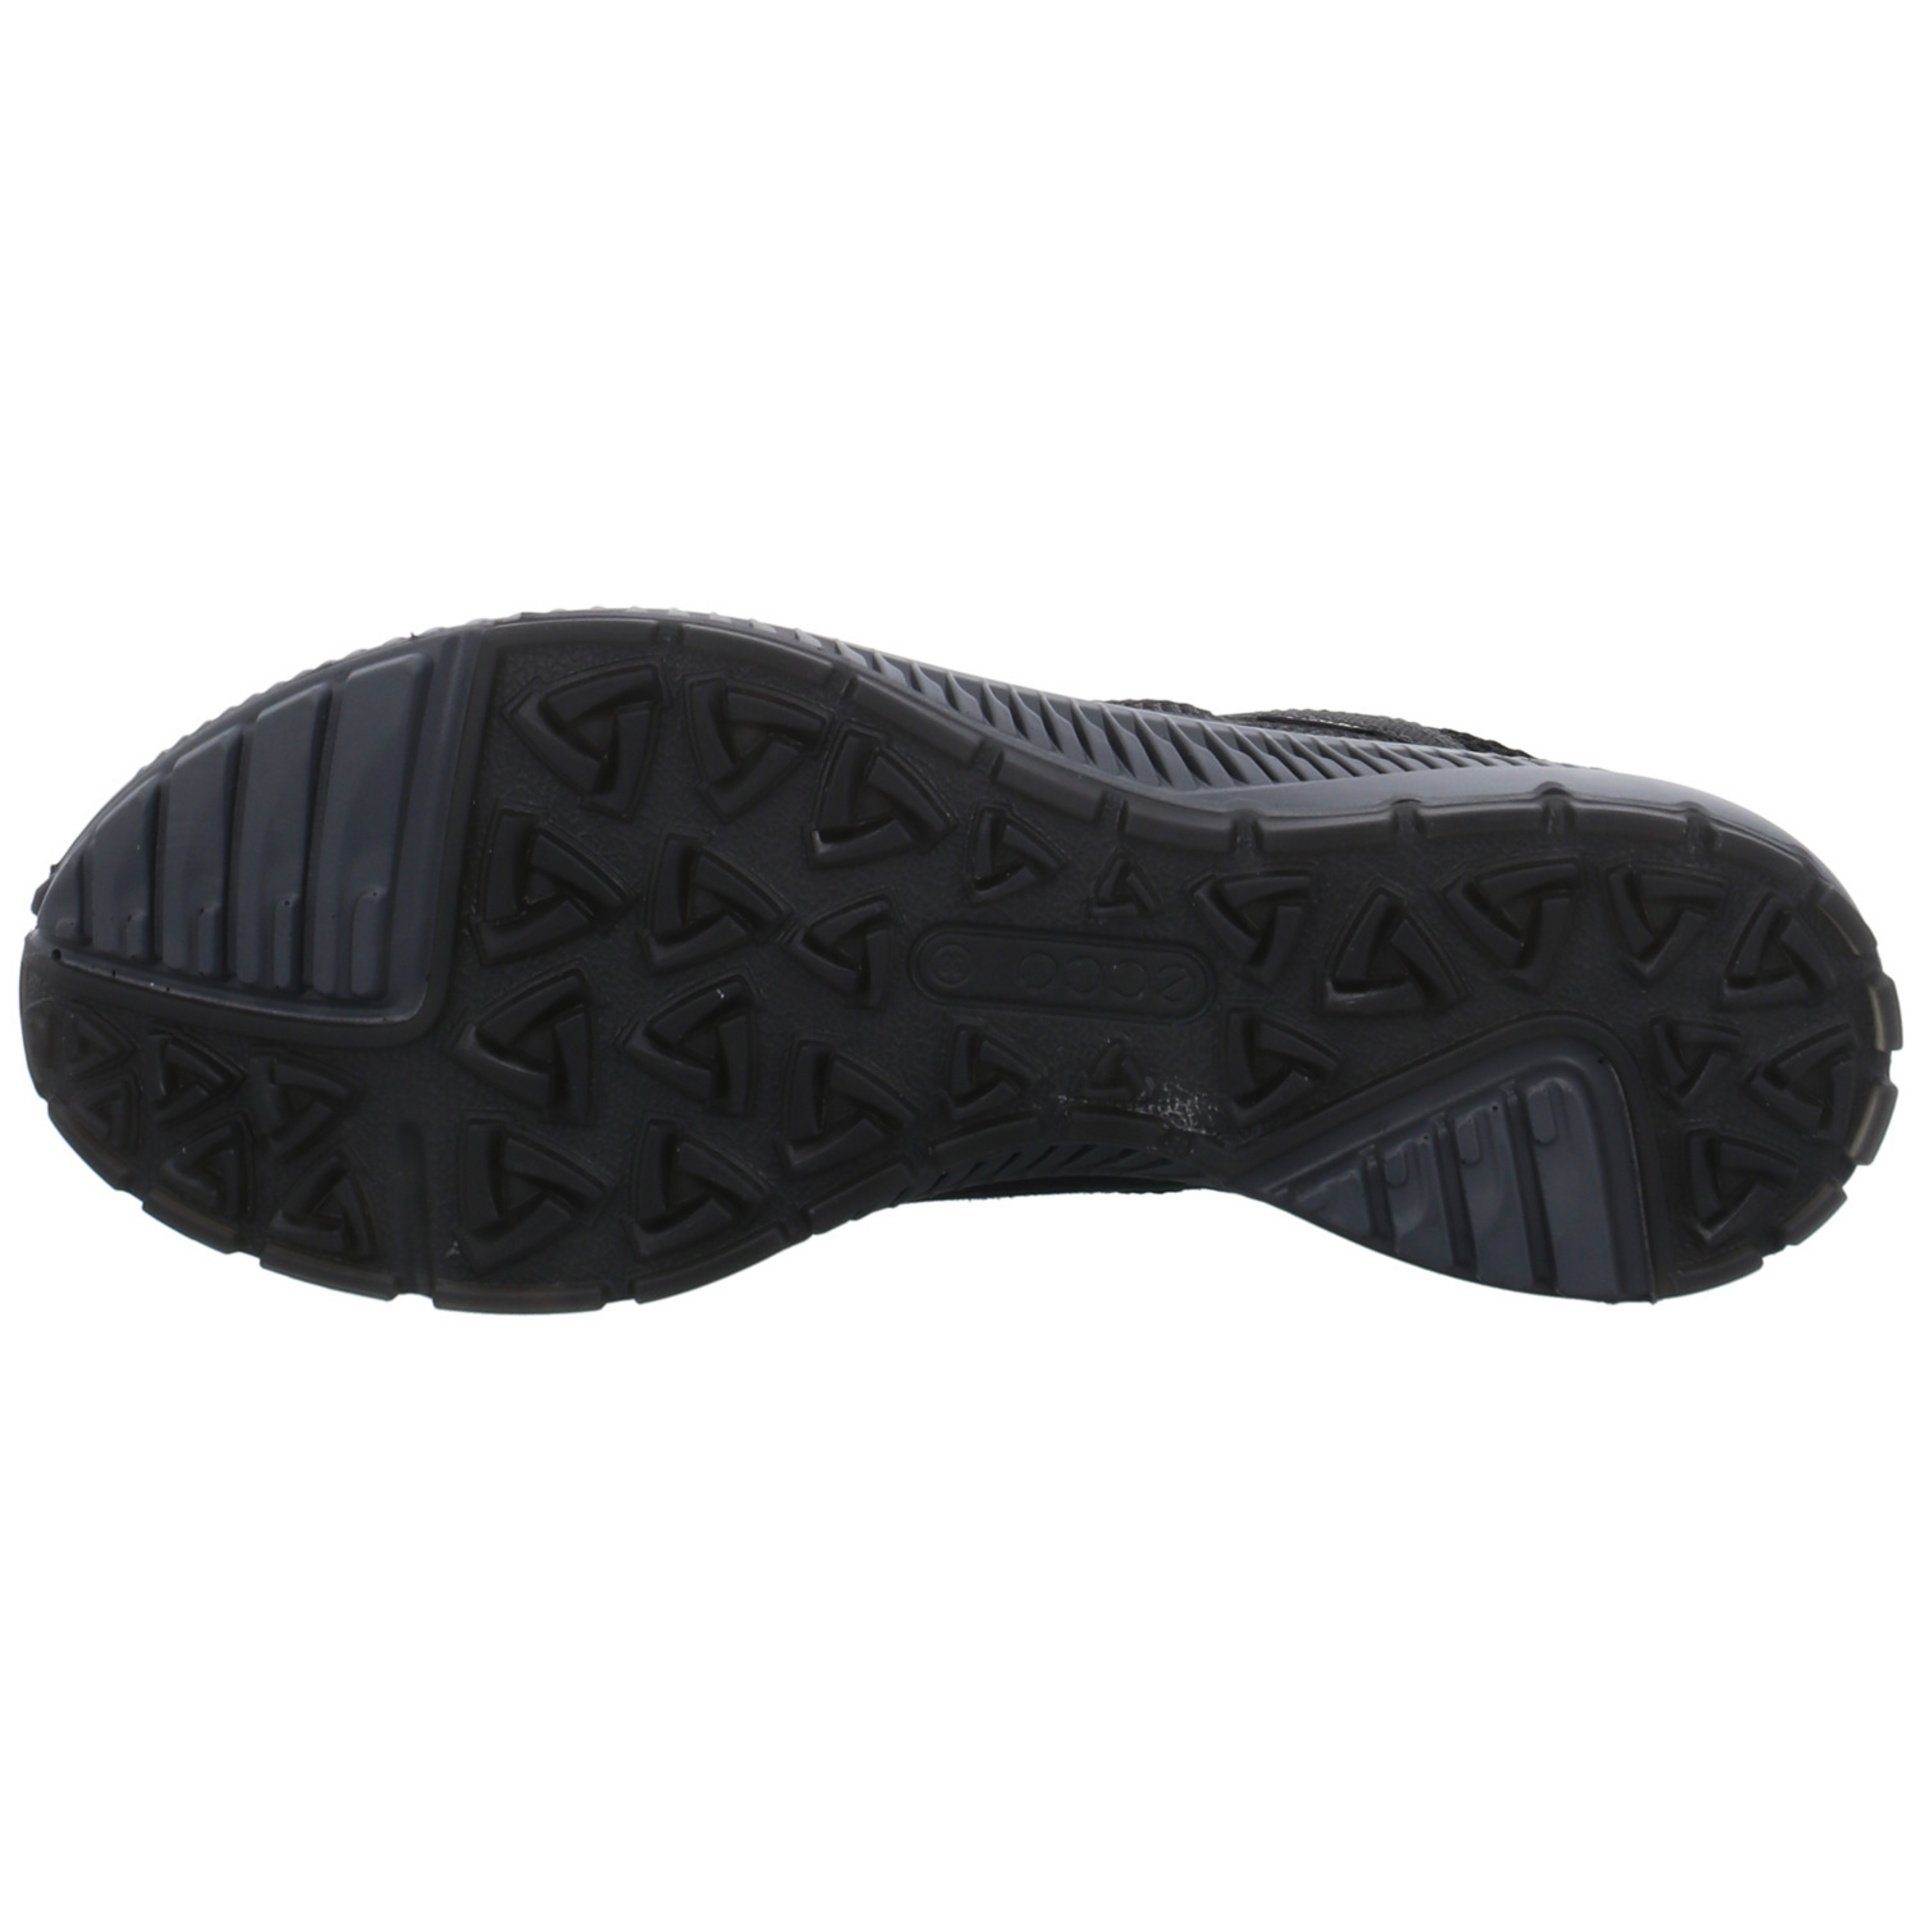 Outdoorschuh Ecco Terracruise Damen GTX Synthetikkombination Schuhe Outdoor black Outdoorschuh